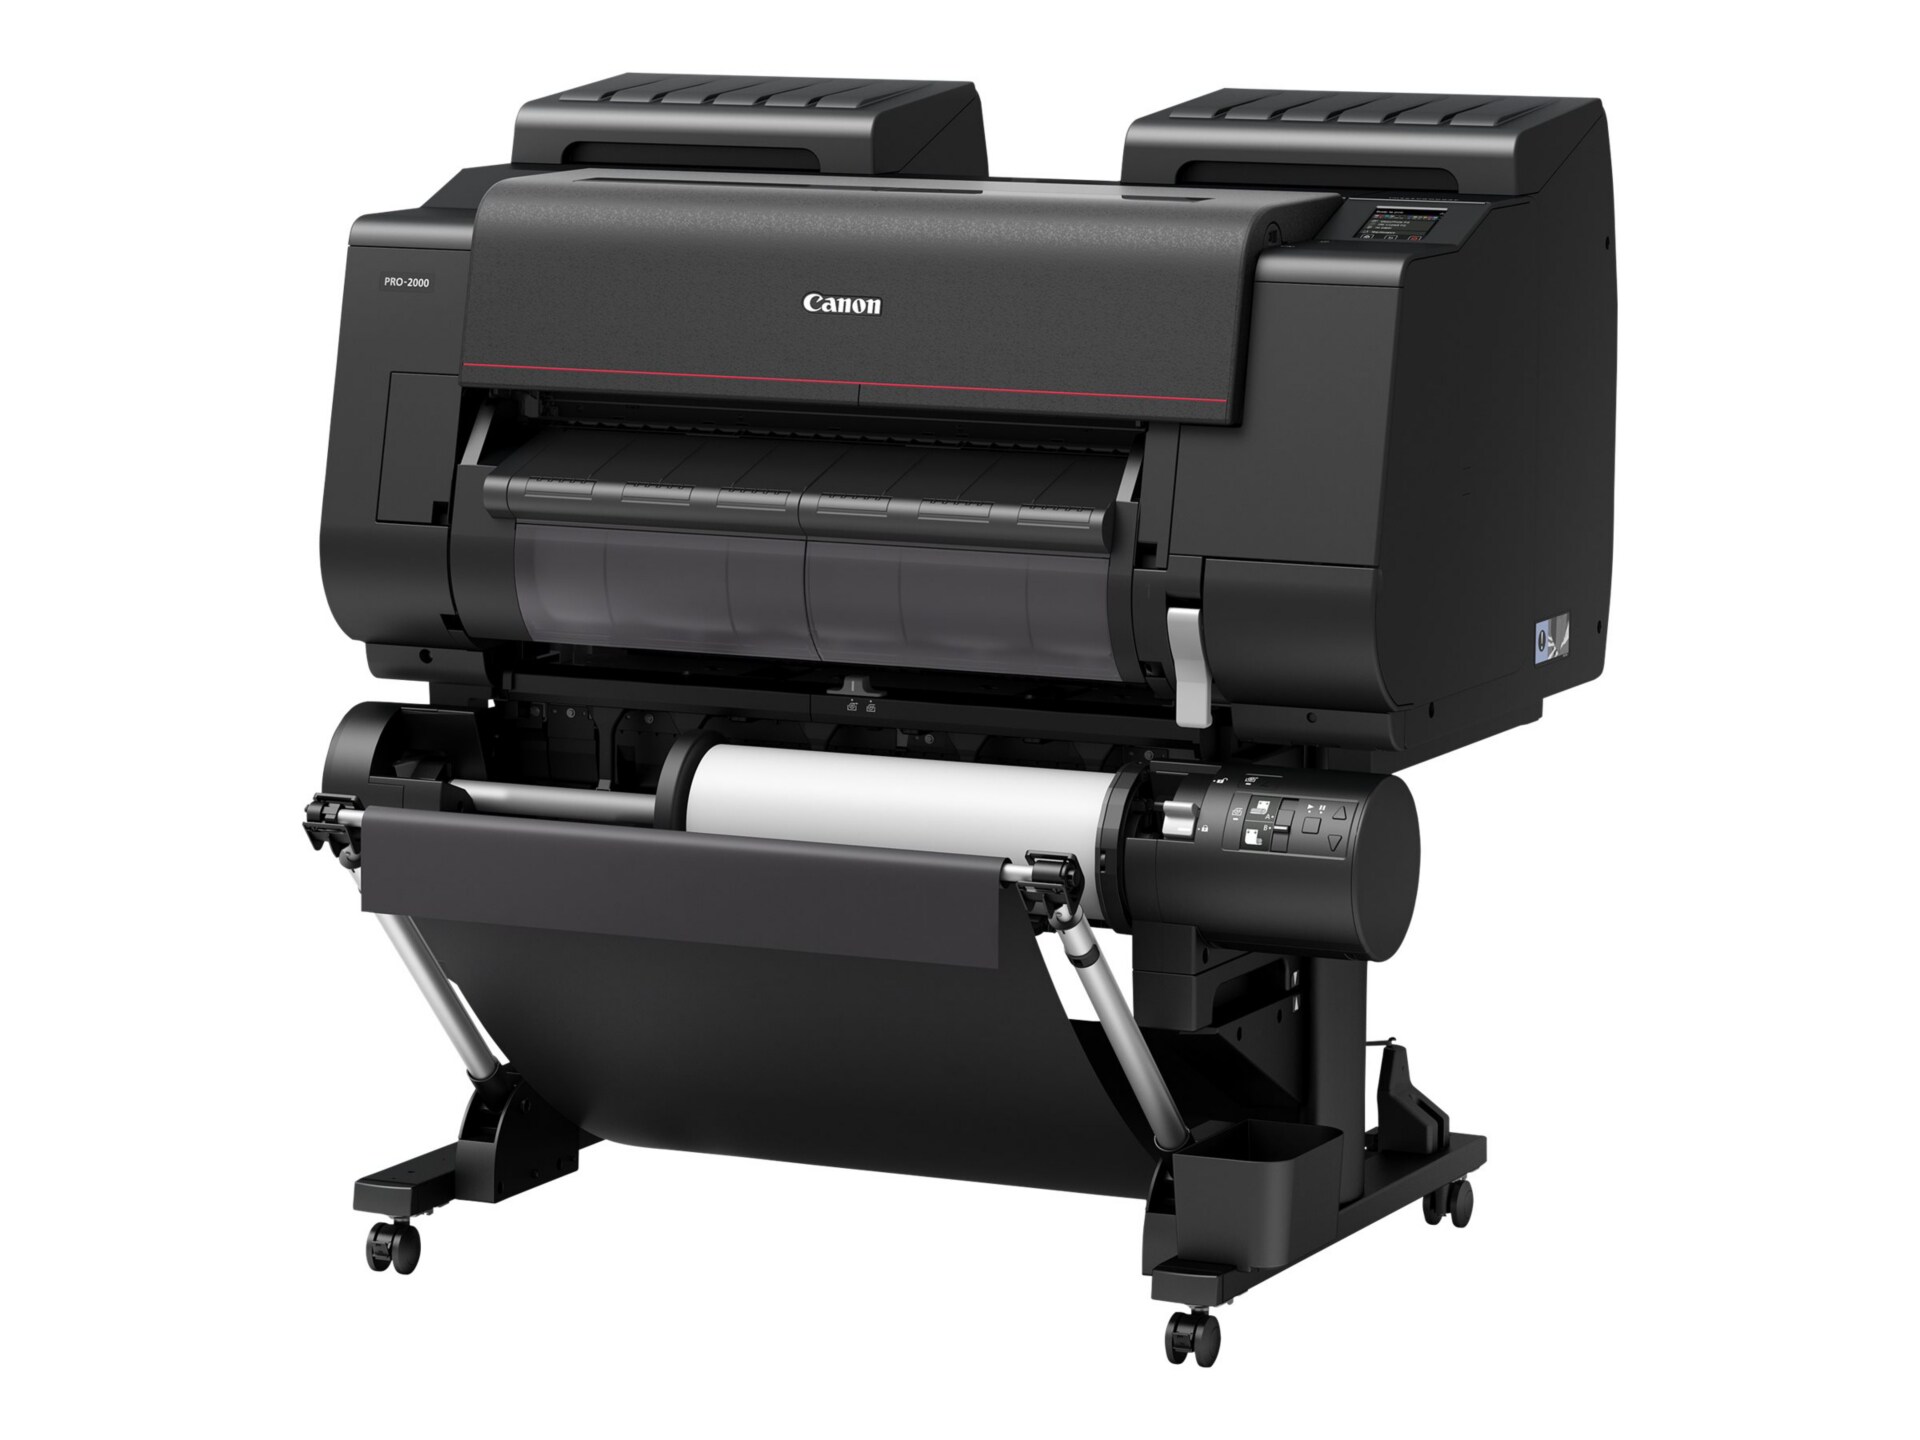 Canon imagePROGRAF PRO-2000 - large-format printer - color - ink-jet